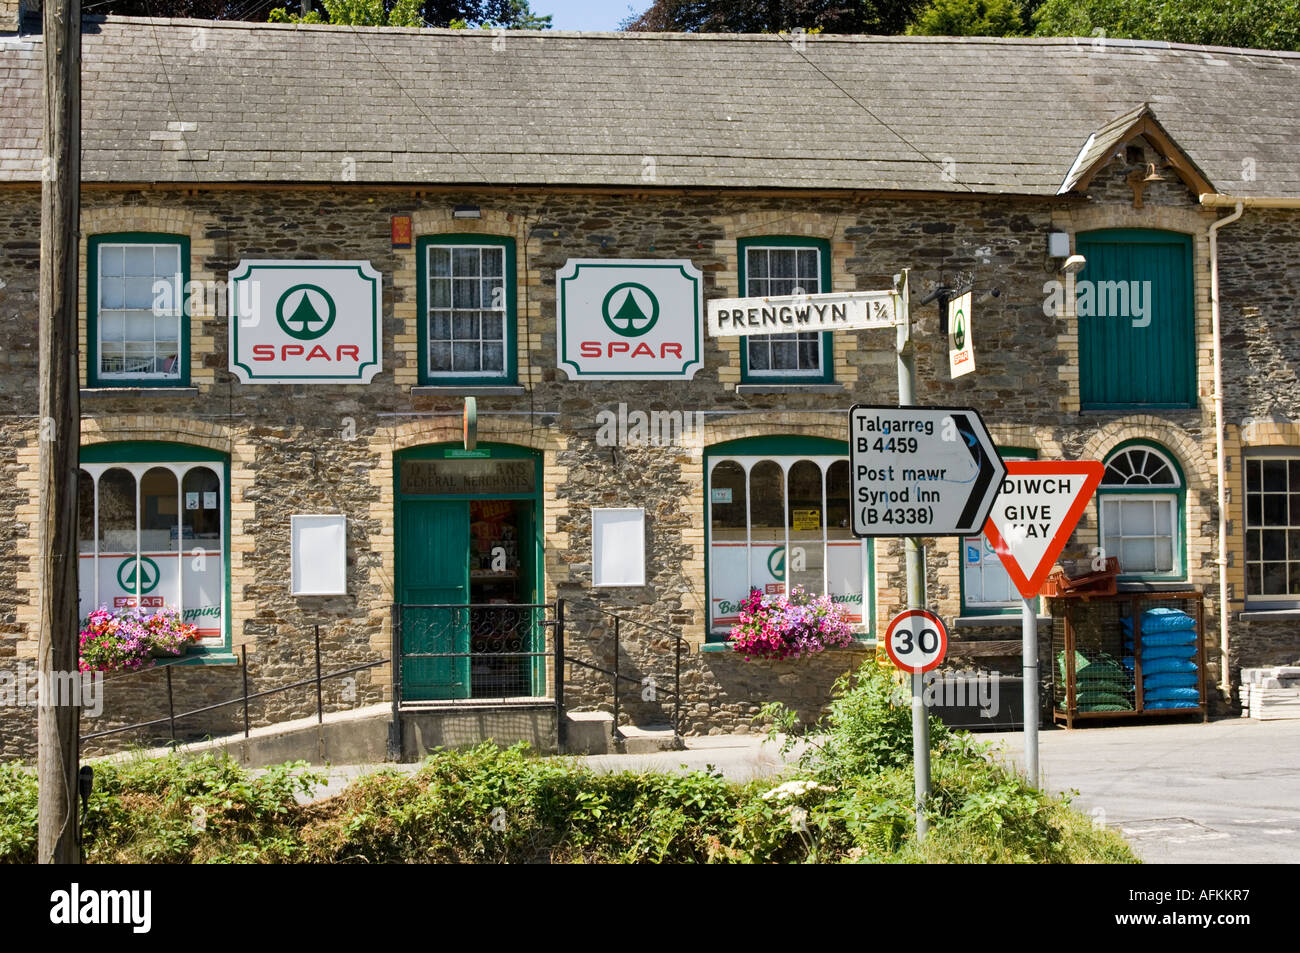 Le bureau de poste et magasin Spar, Pontsian Pont Sian Ceredigion Pays de Galles cymru - un village rural store, UK Banque D'Images